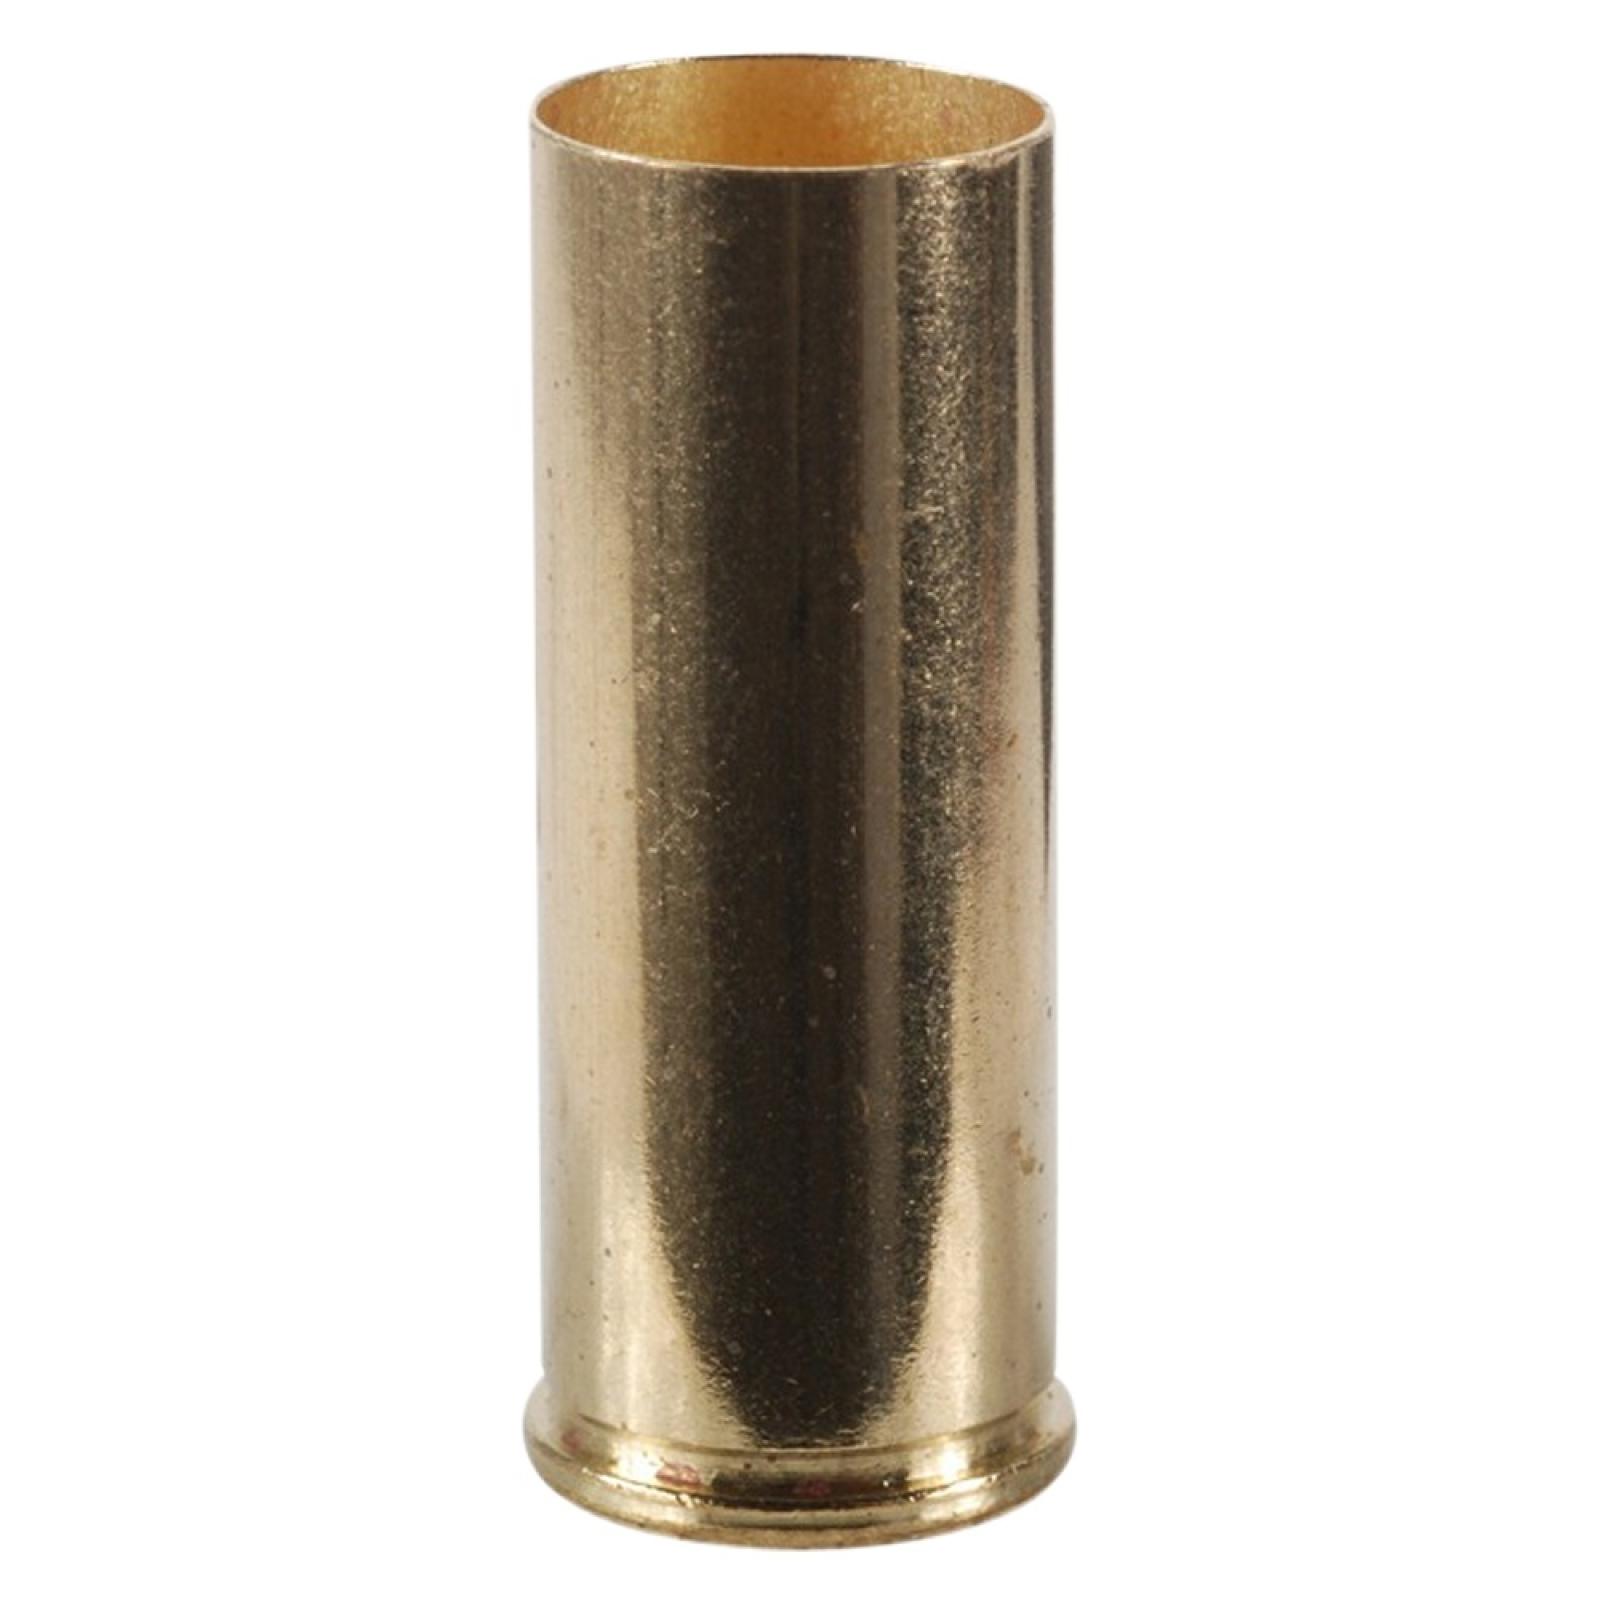 Winchester Brass 45 Colt (Long Colt) Unprimed Bag of 100